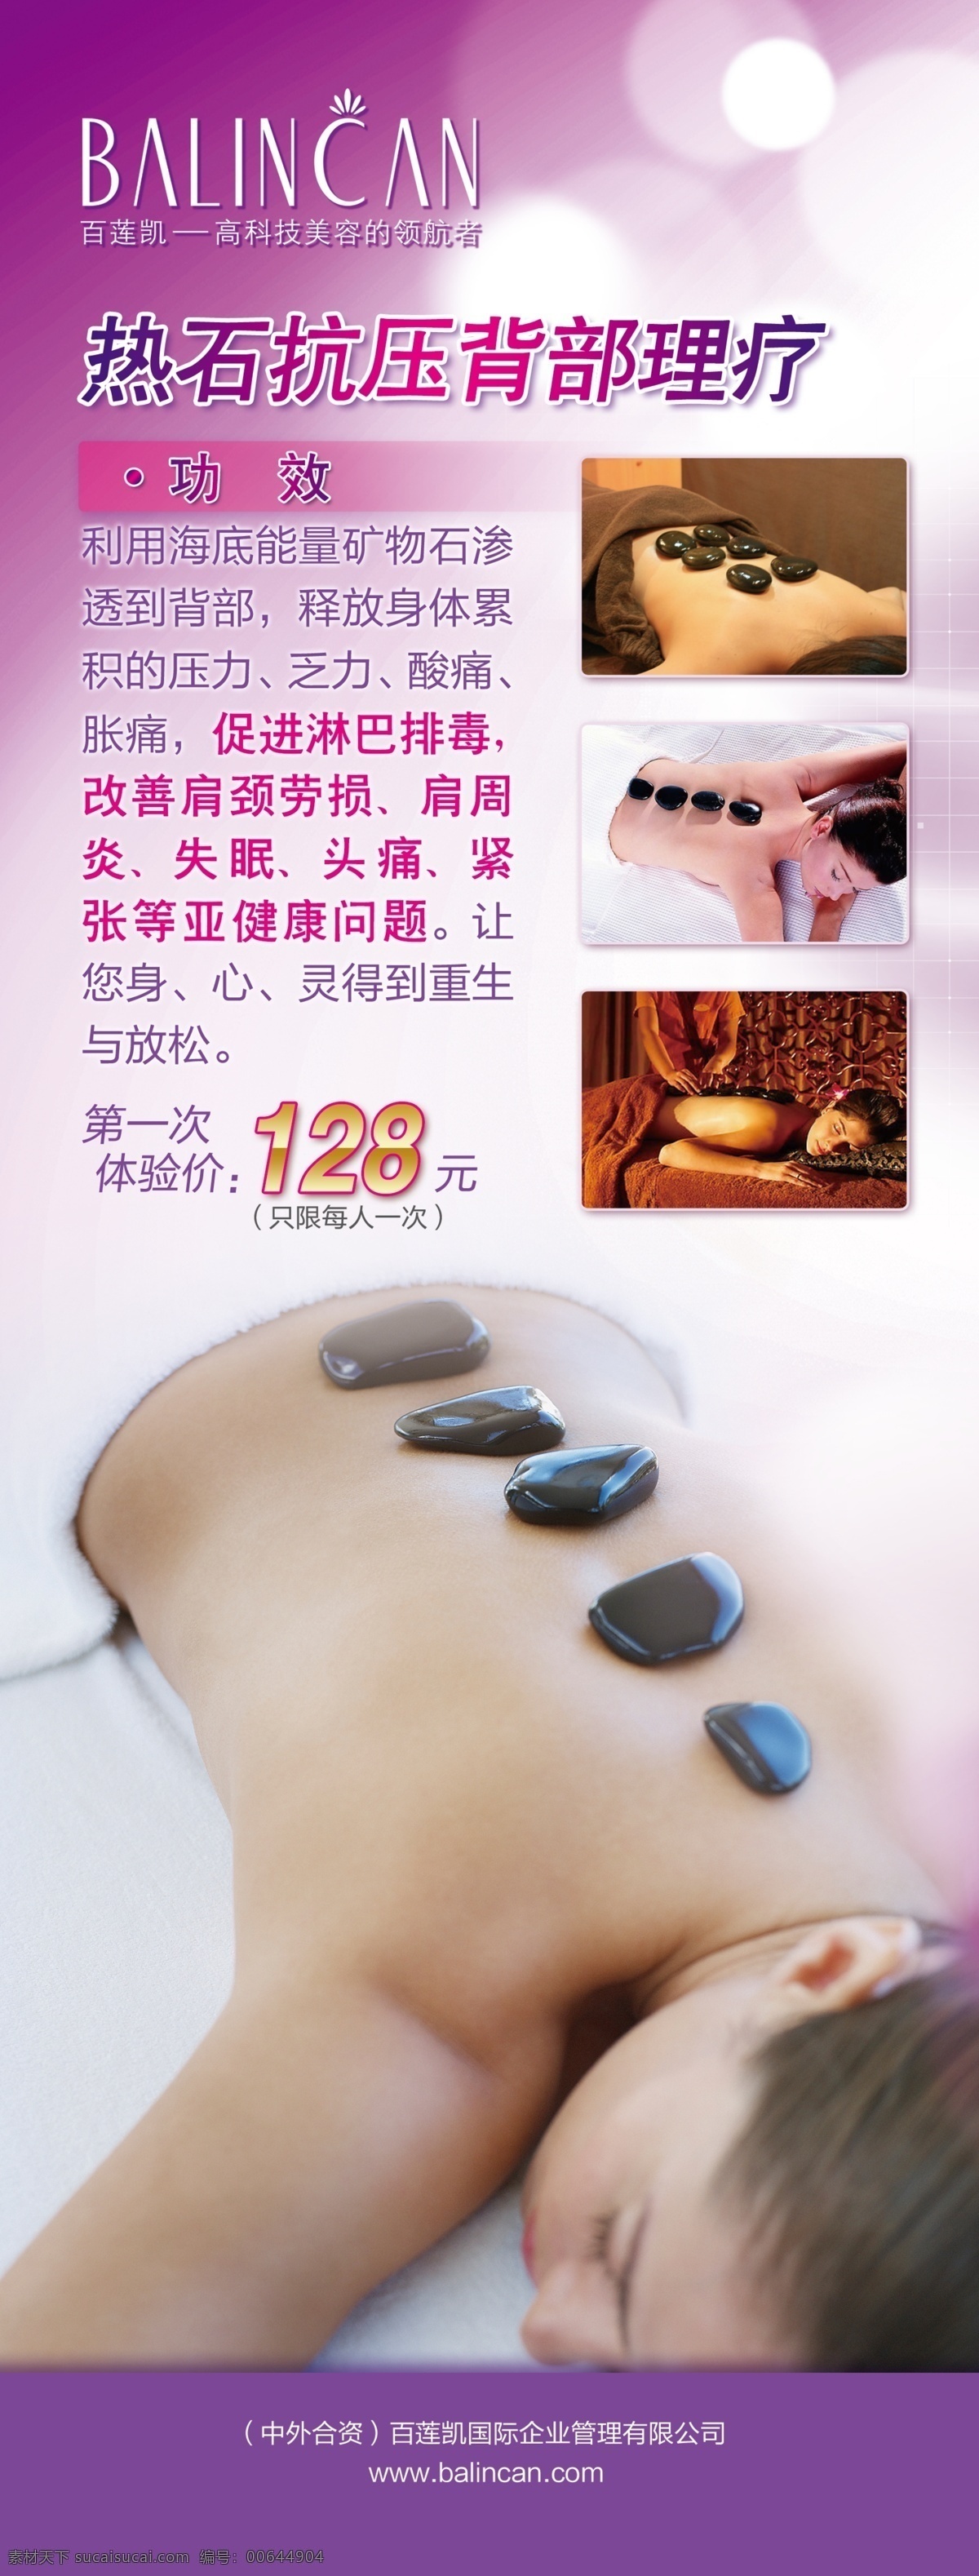 背部理疗 石疗 化妆品x展架 美容广告 化妆品海报 广告设计模板 源文件